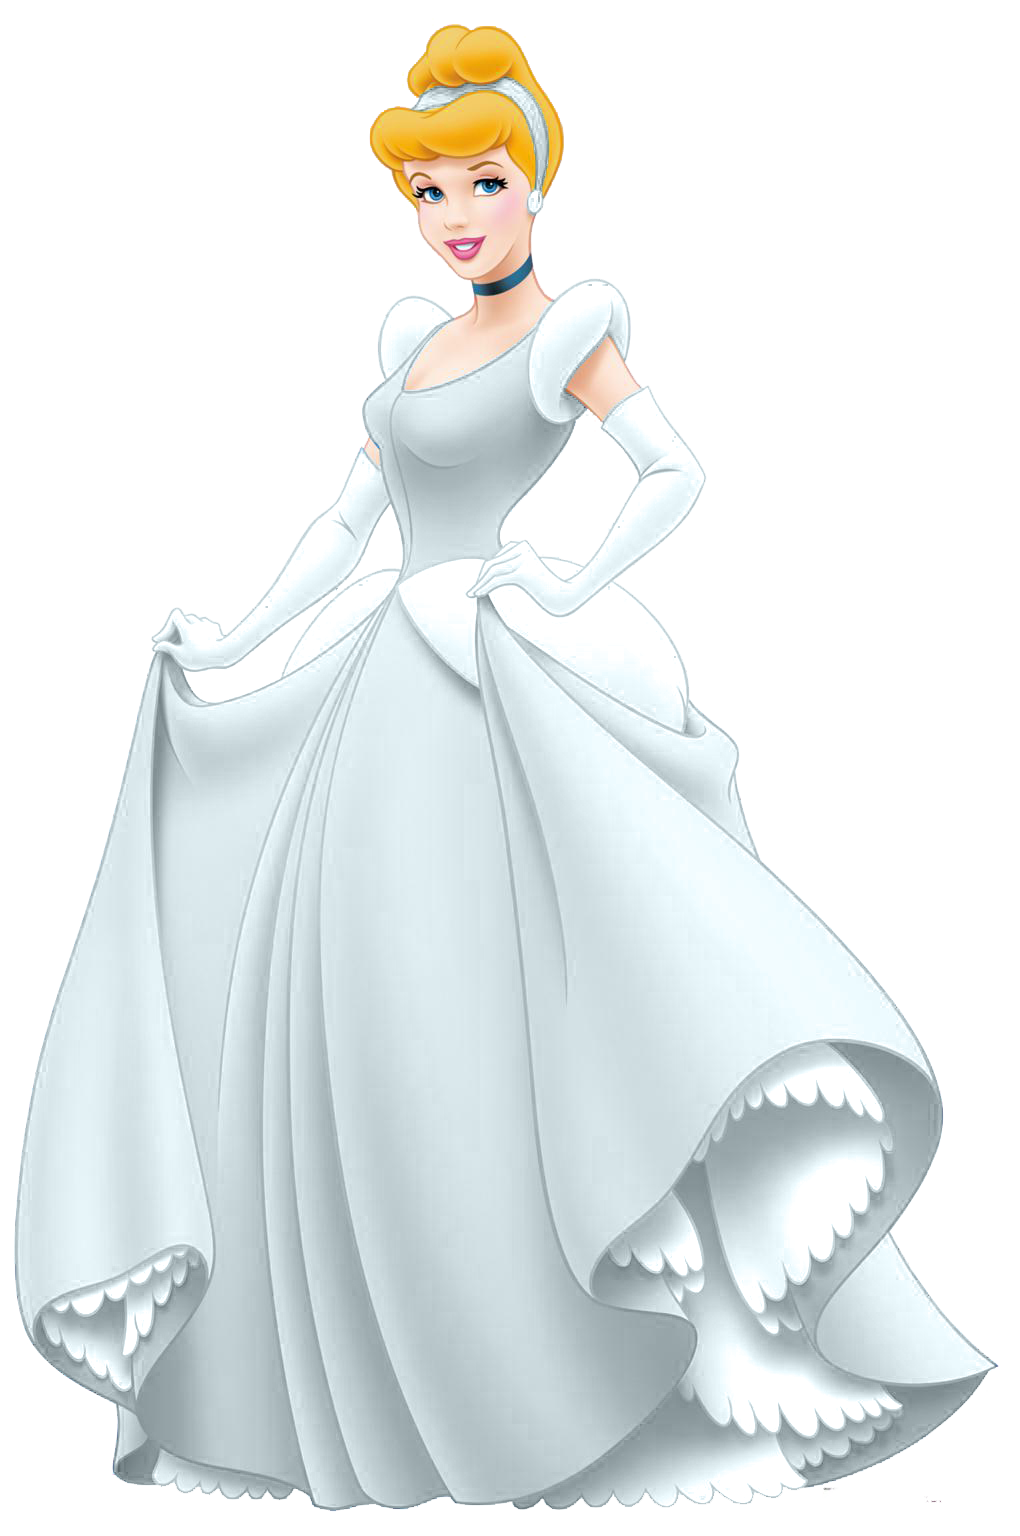 Cinderella, Disney Wiki